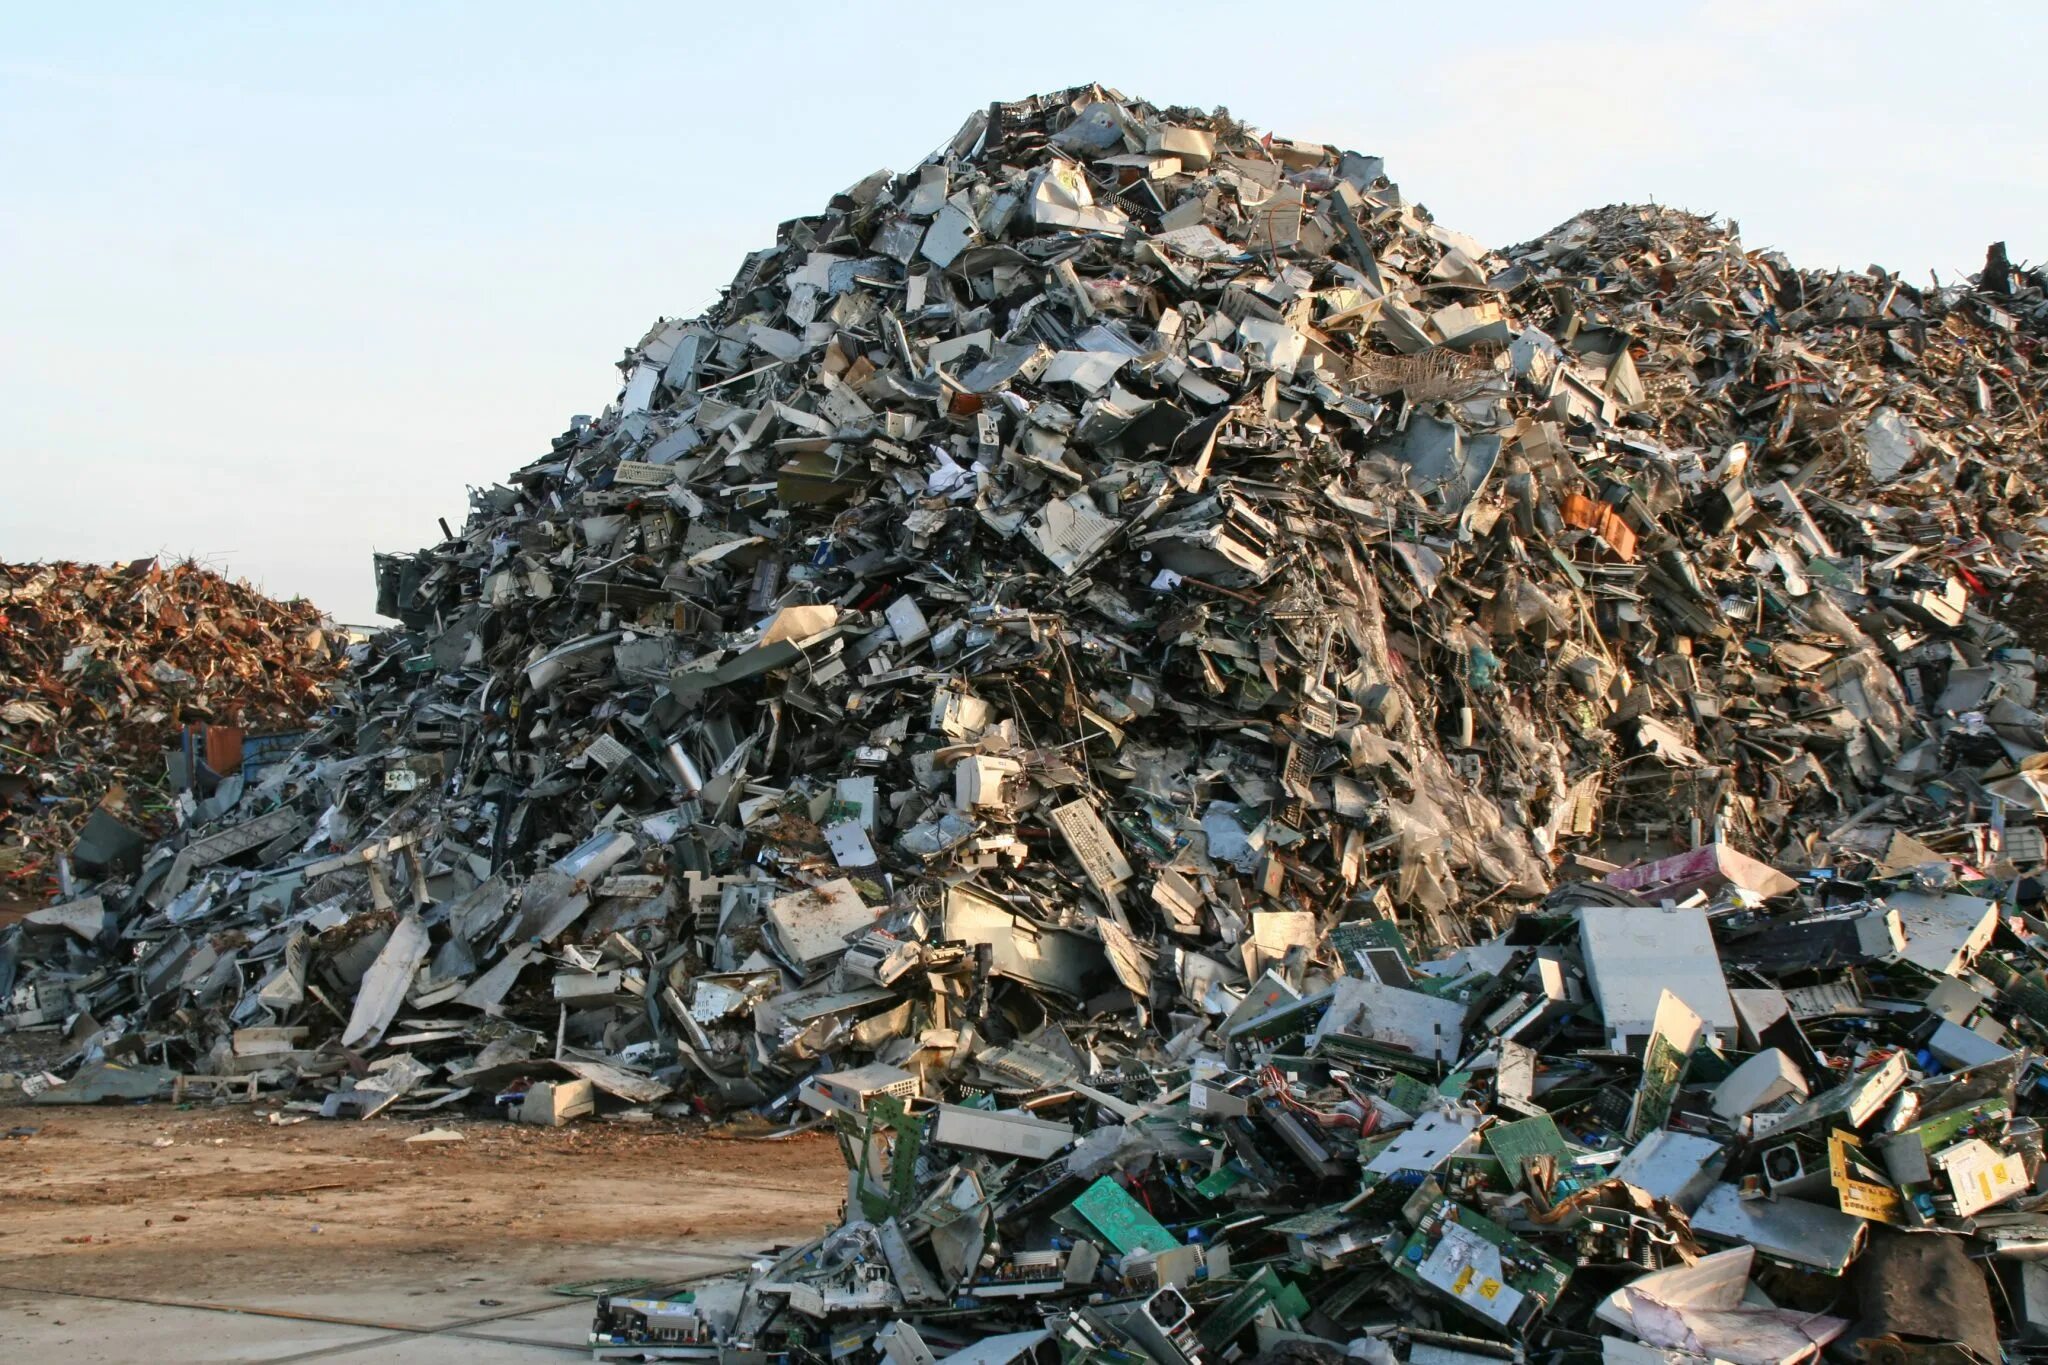 Х отходов. Электронные отходы Guiyu в Китае. Свалка электронного мусора. Свалка металла. Свалка металлолома.